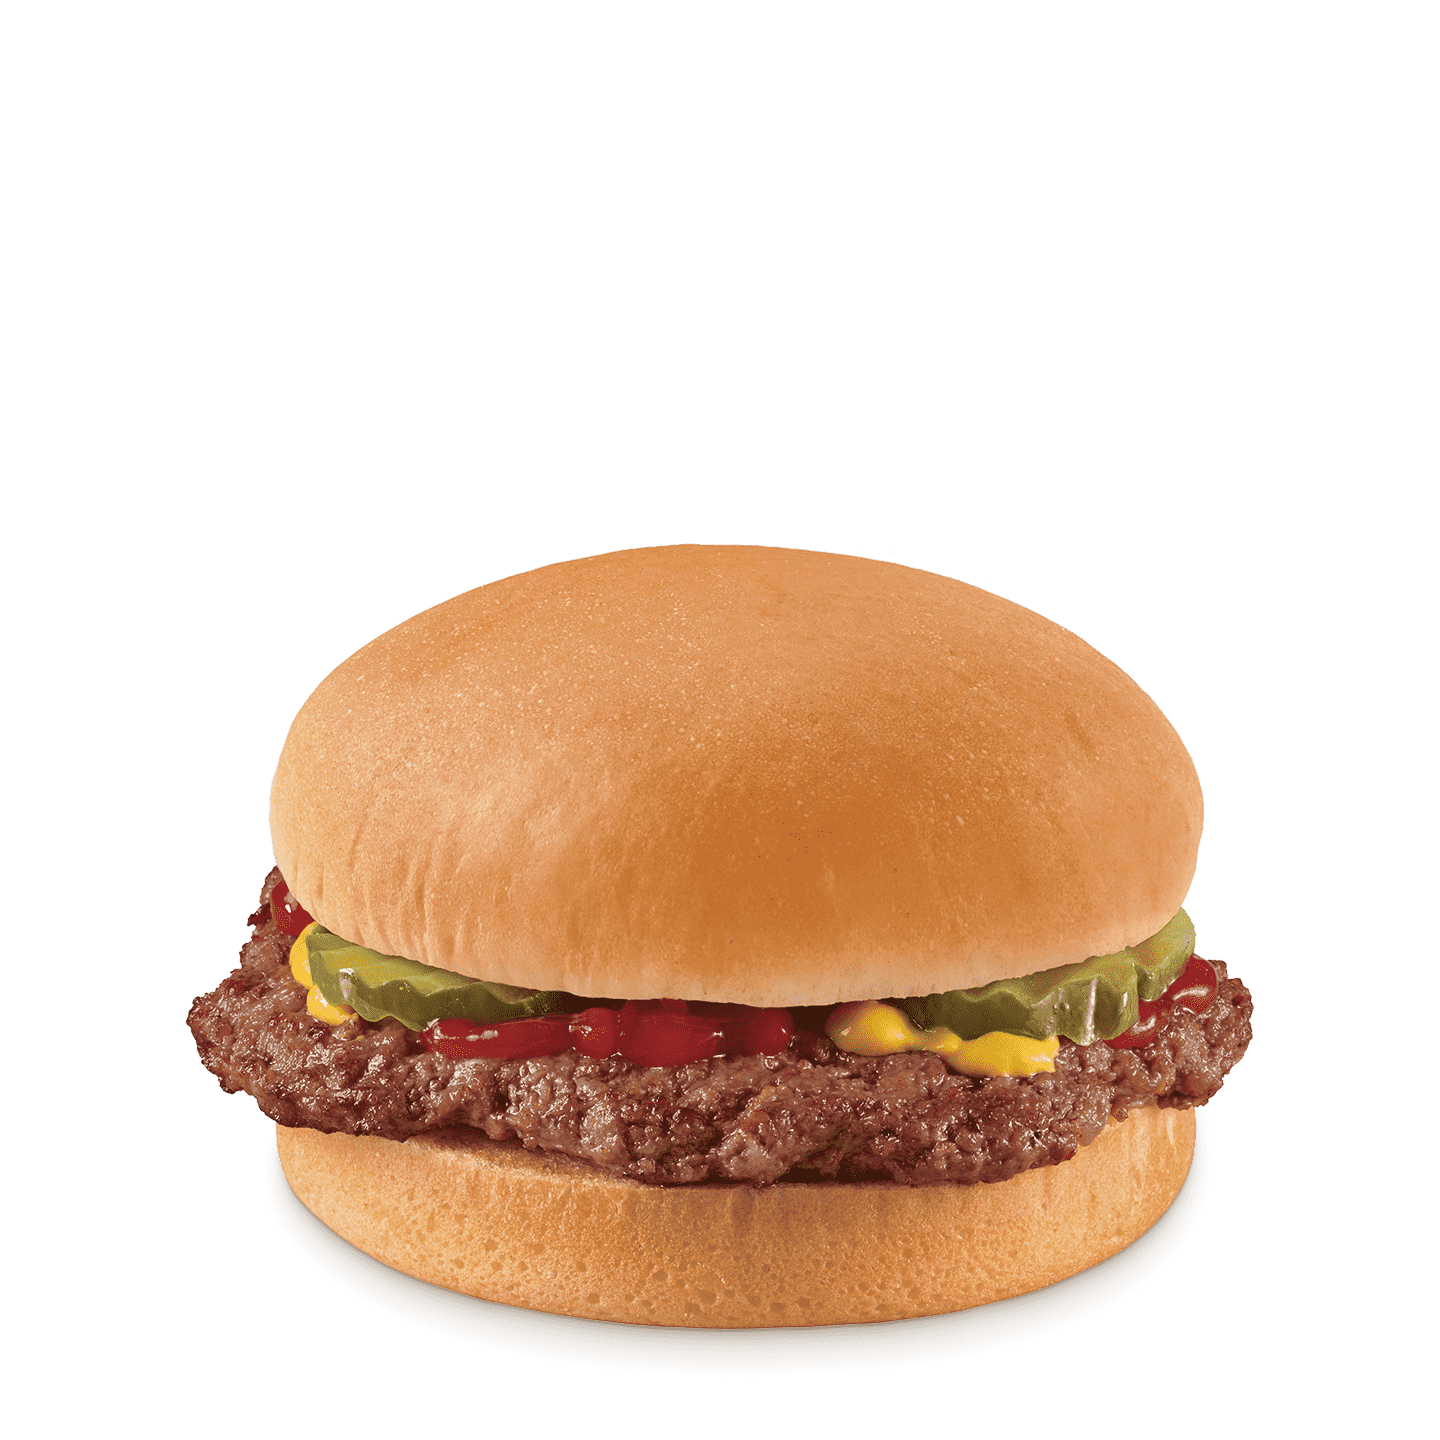 hamburger with pickles, mustard and ketchup